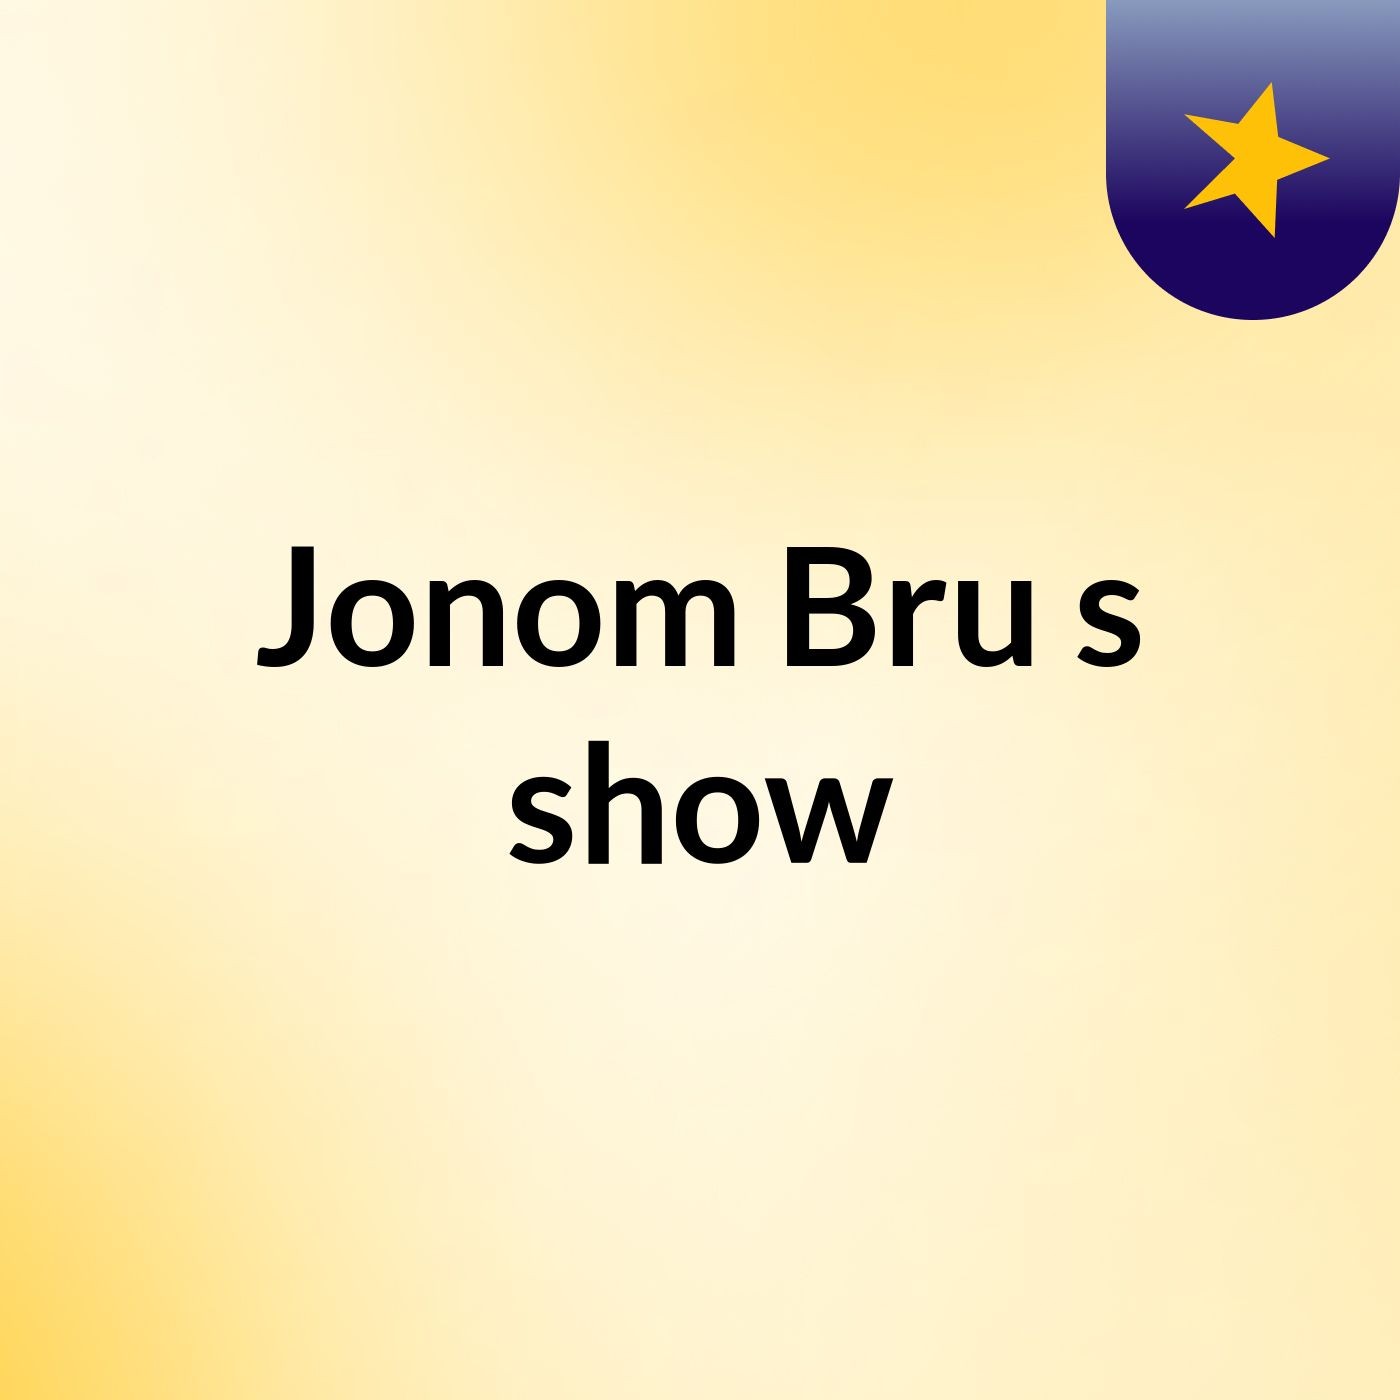 Jonom Bru's show